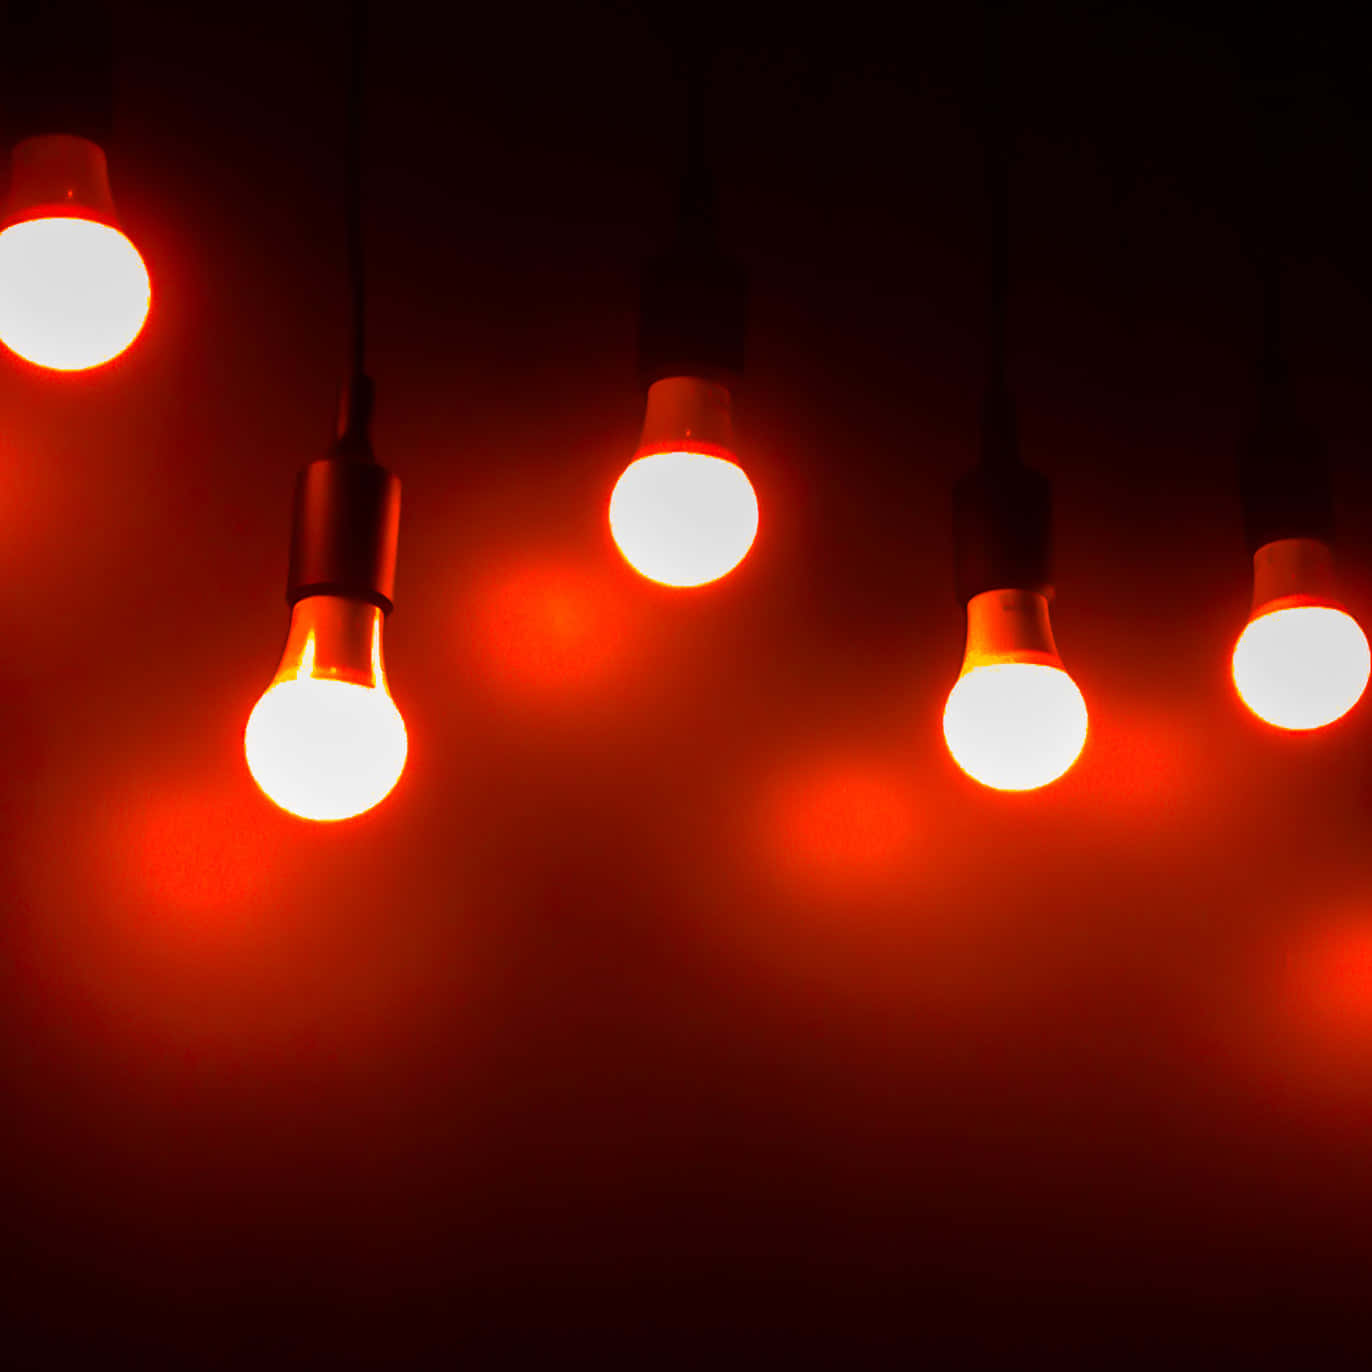 A Group Of Light Bulbs